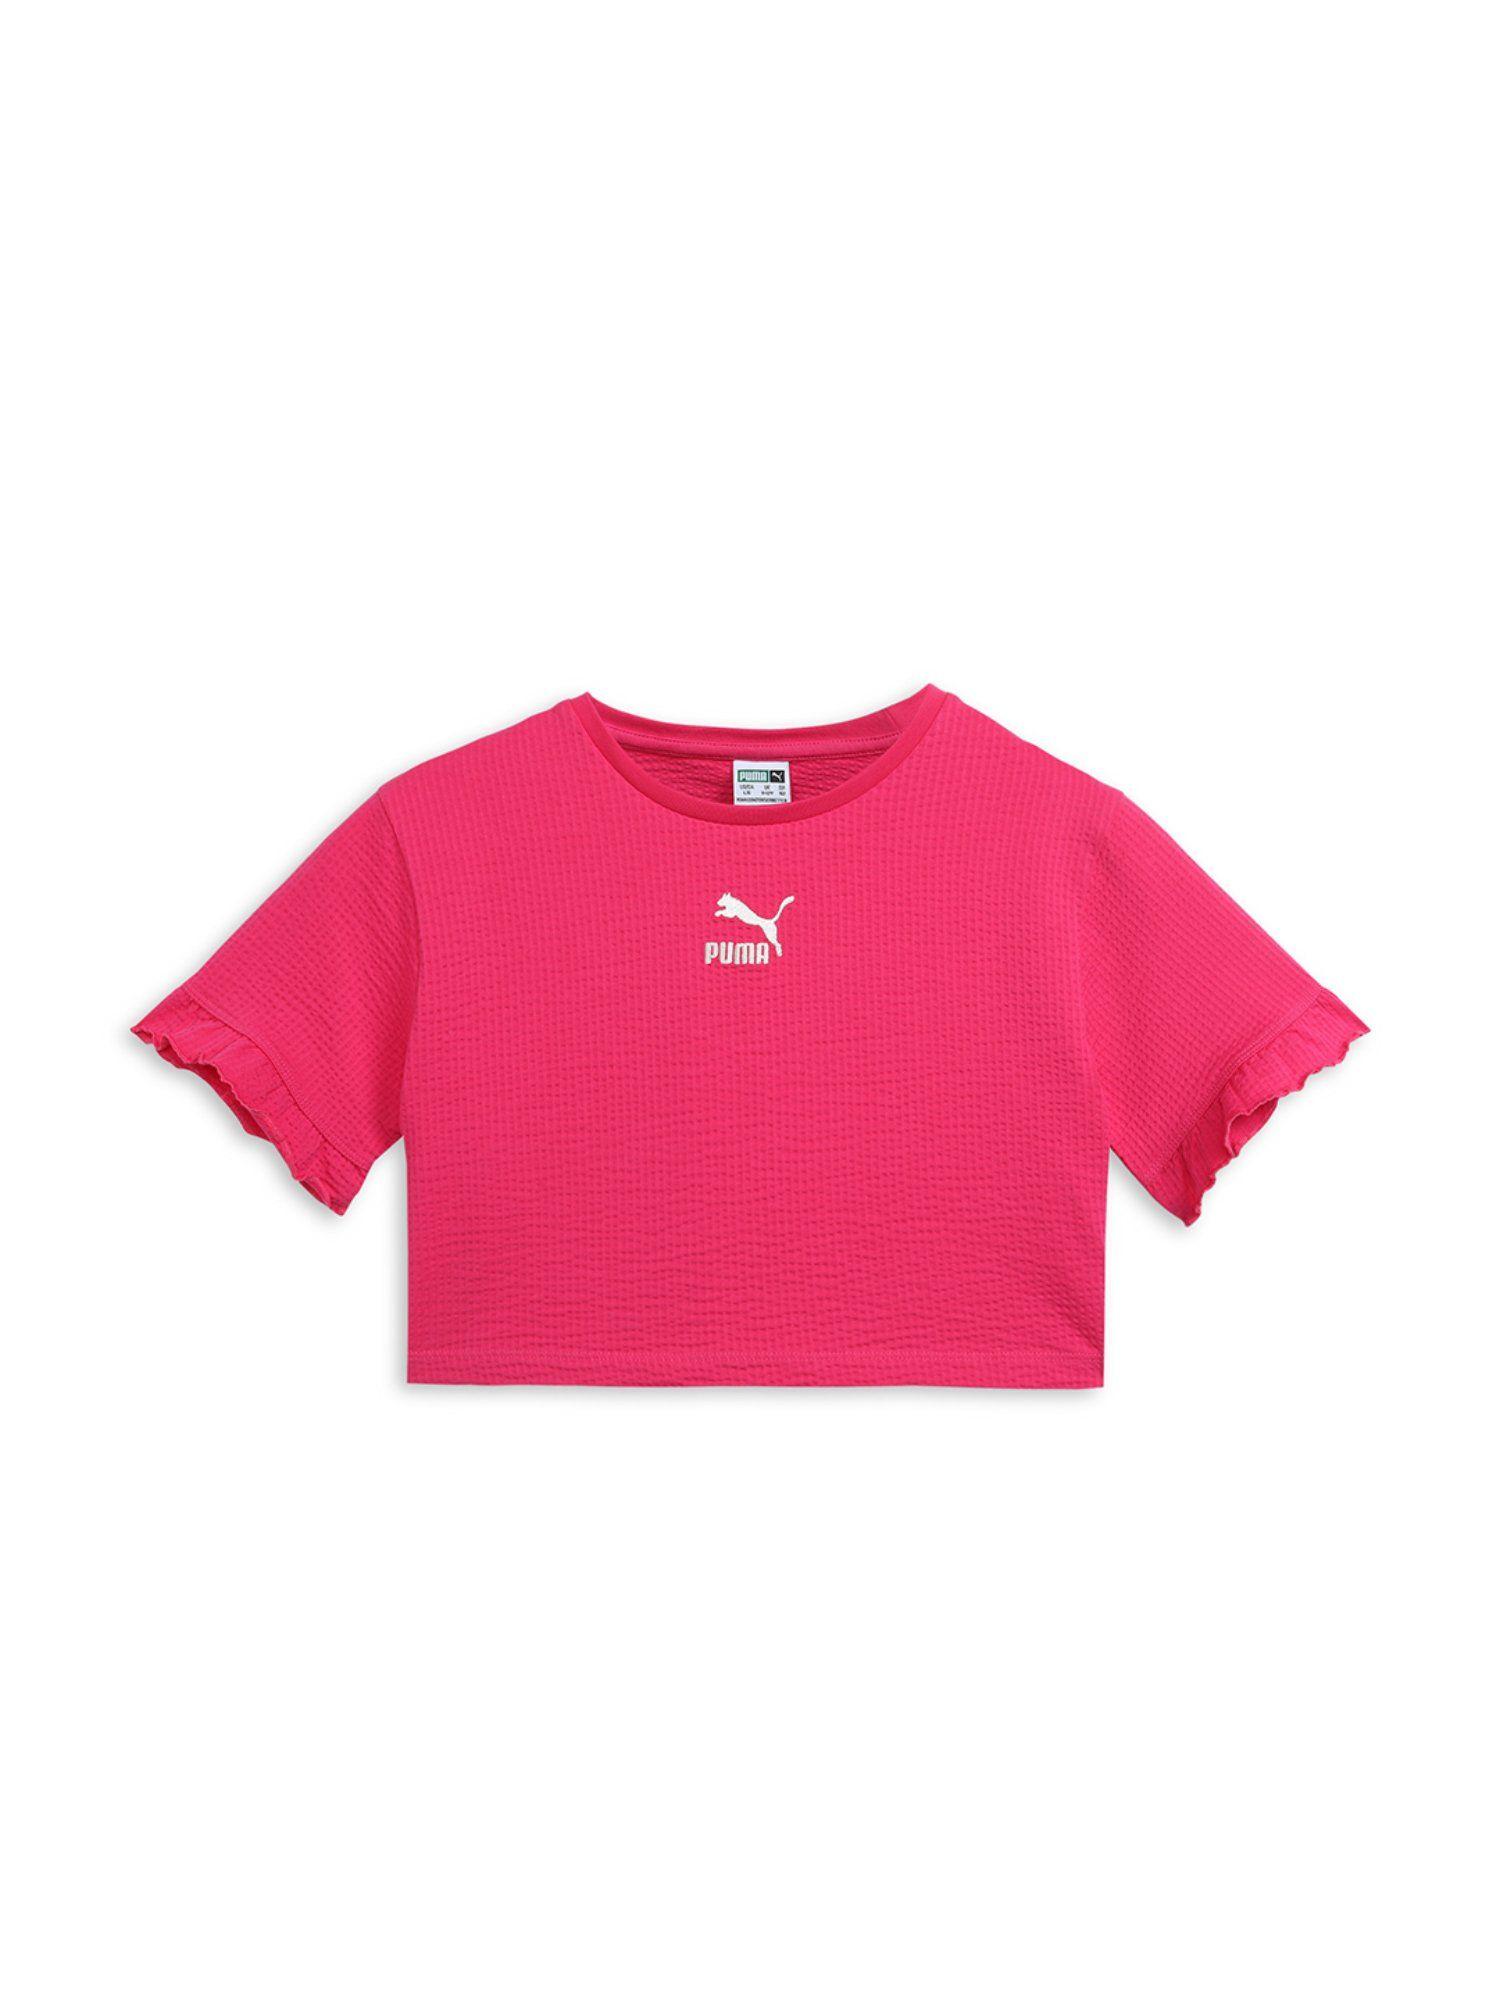 ruffles g girls pink t-shirt